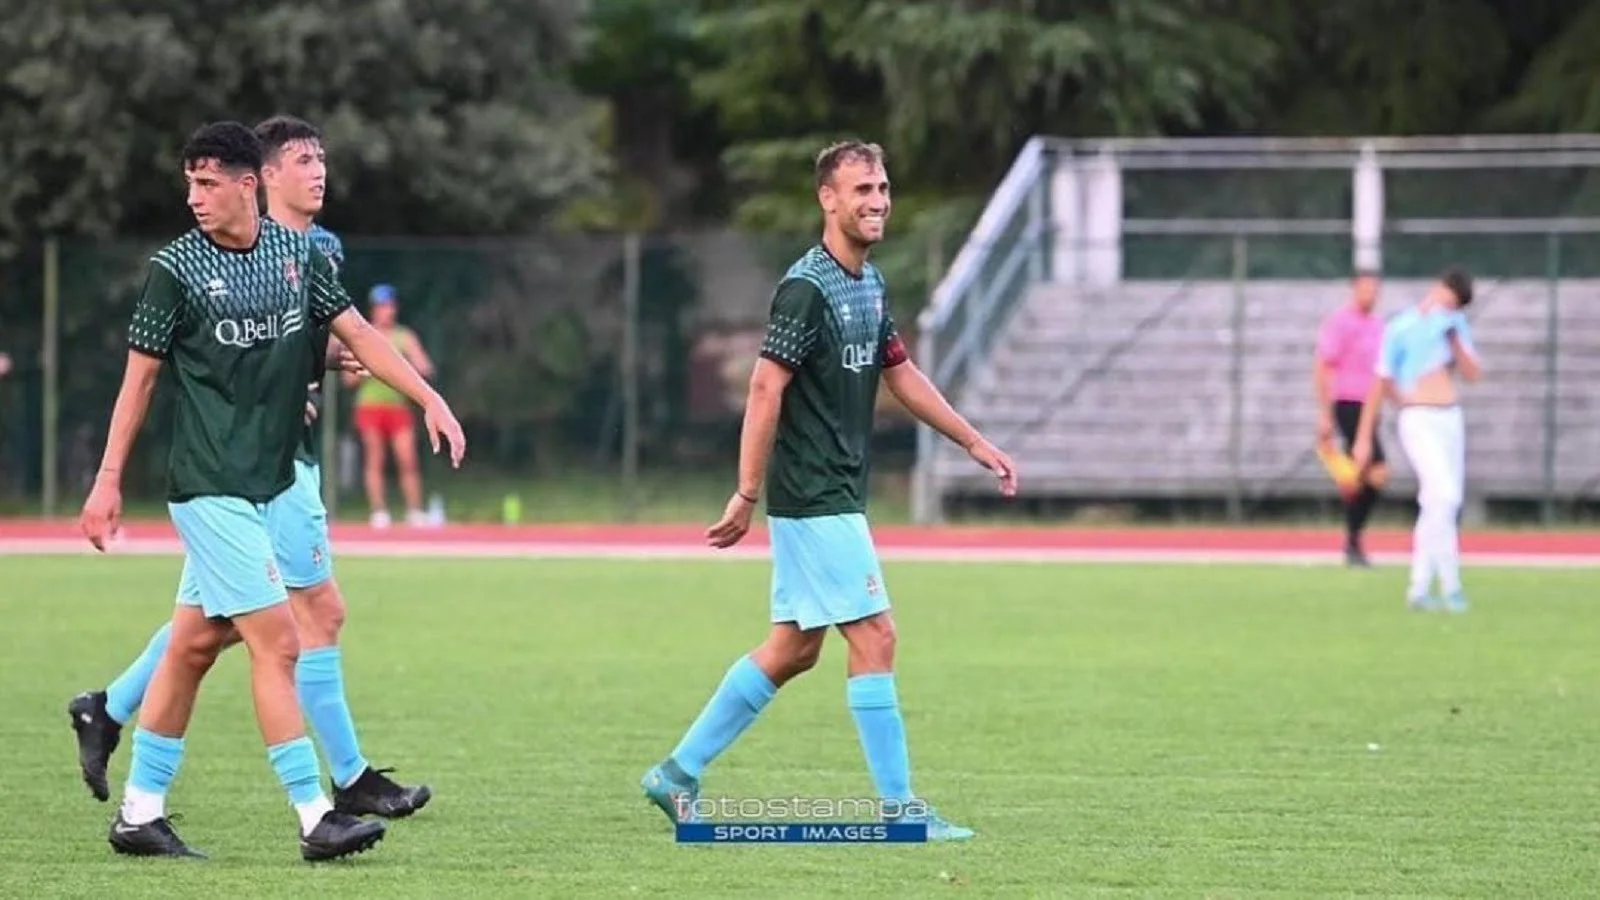 La gioia dei giocatori del Treviso dopo la vittoria - credit: Fotostampa Sport Images